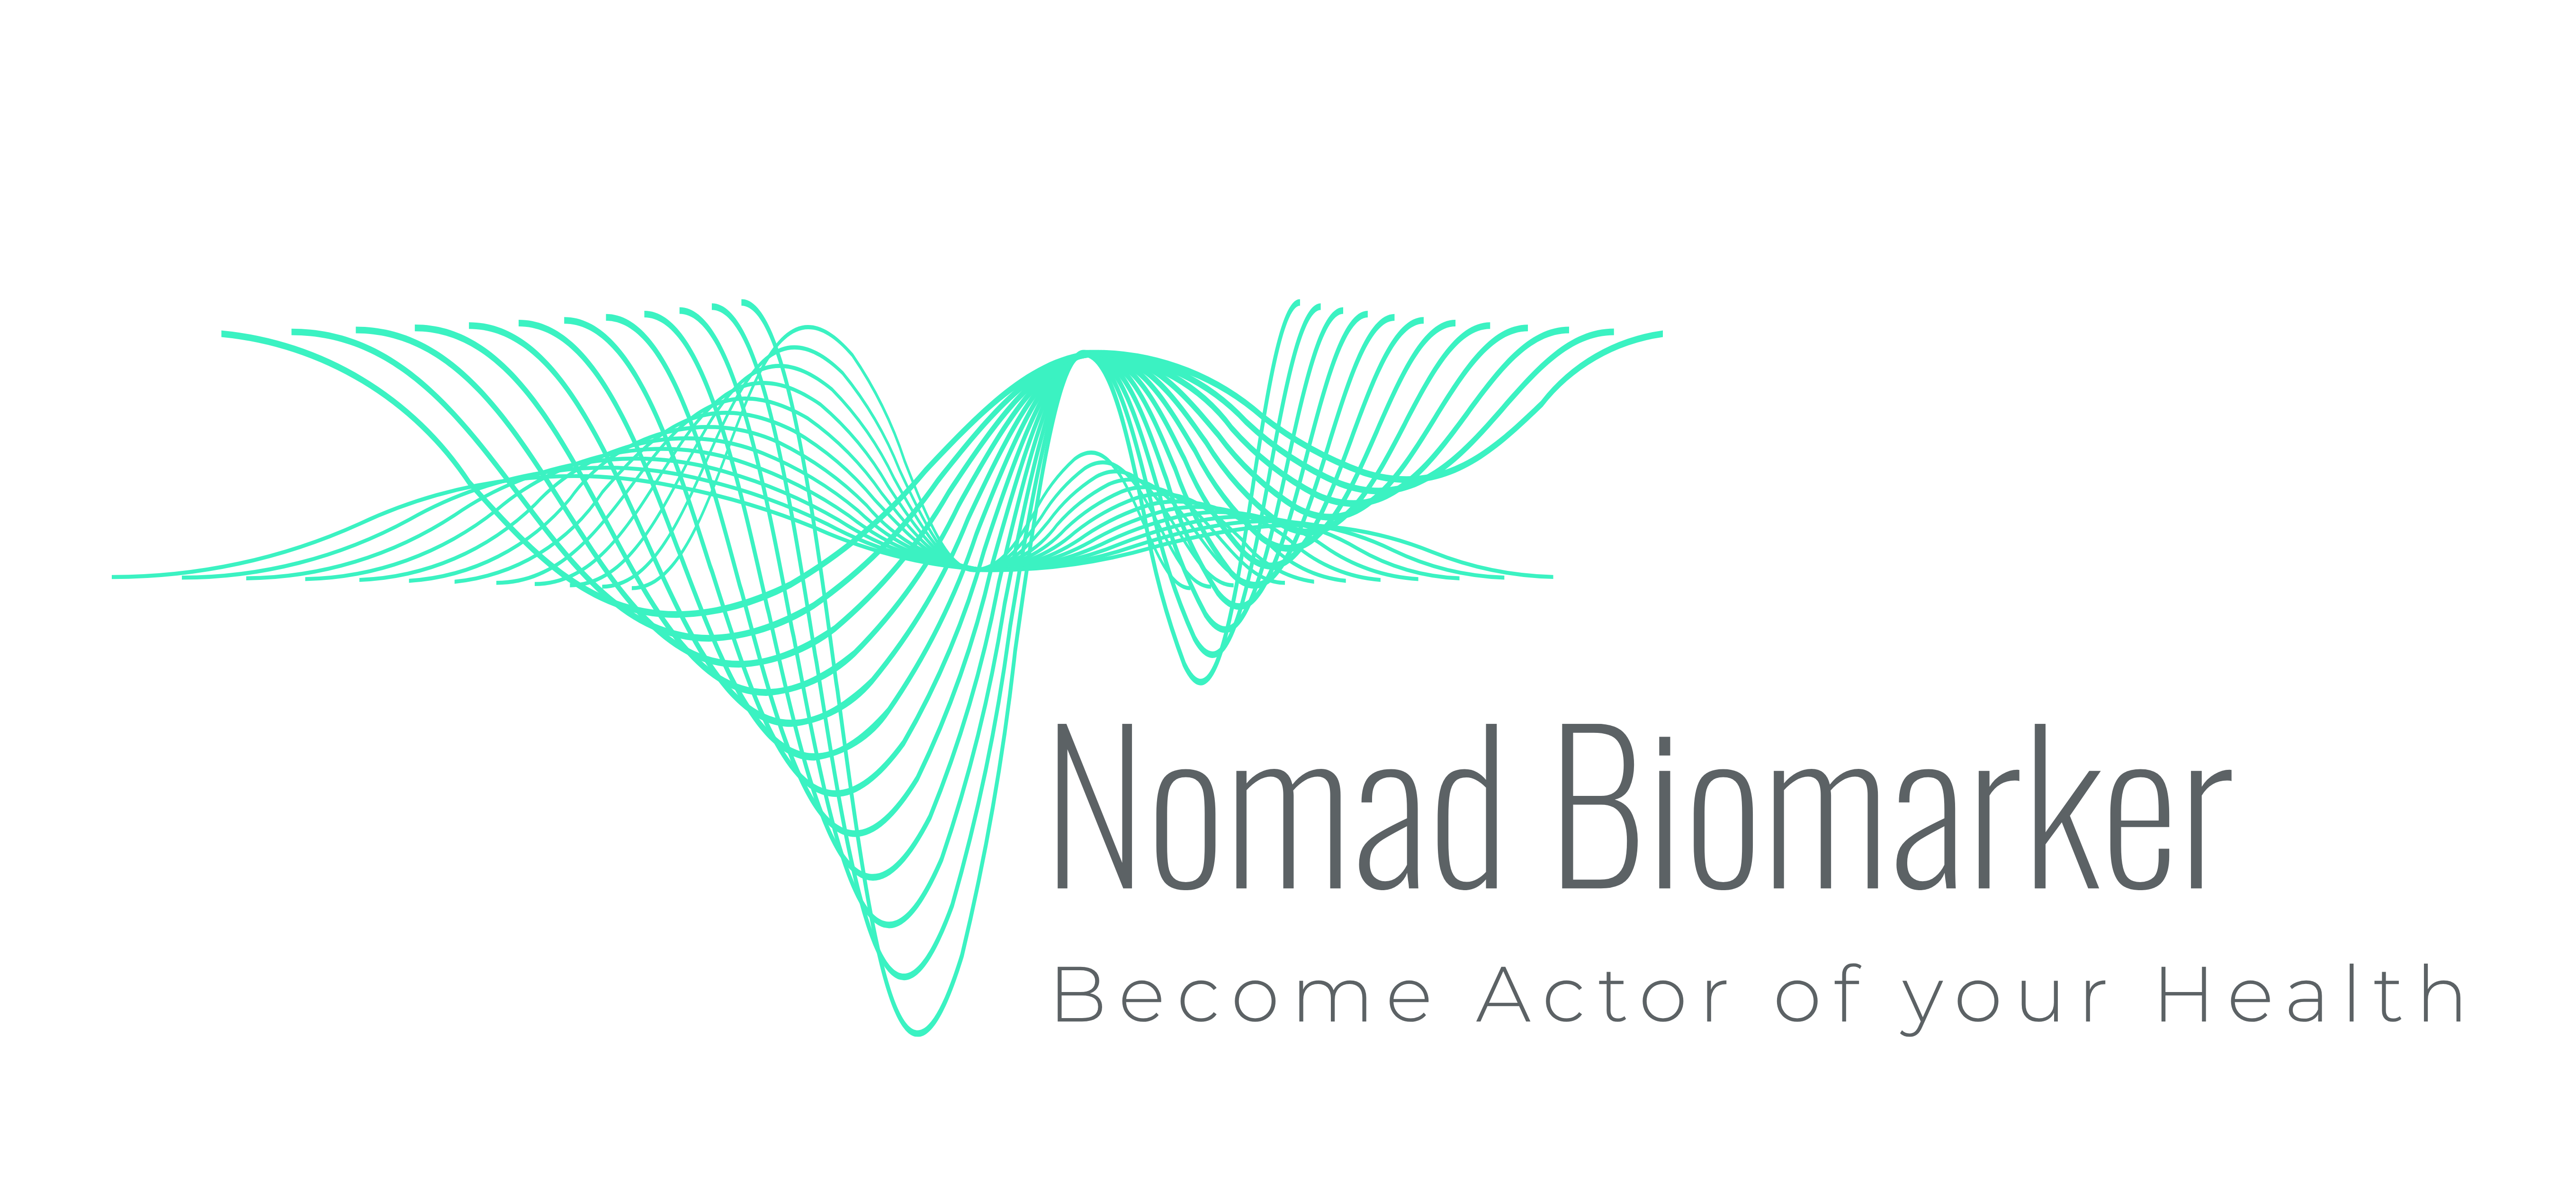 Nomad Biomarker